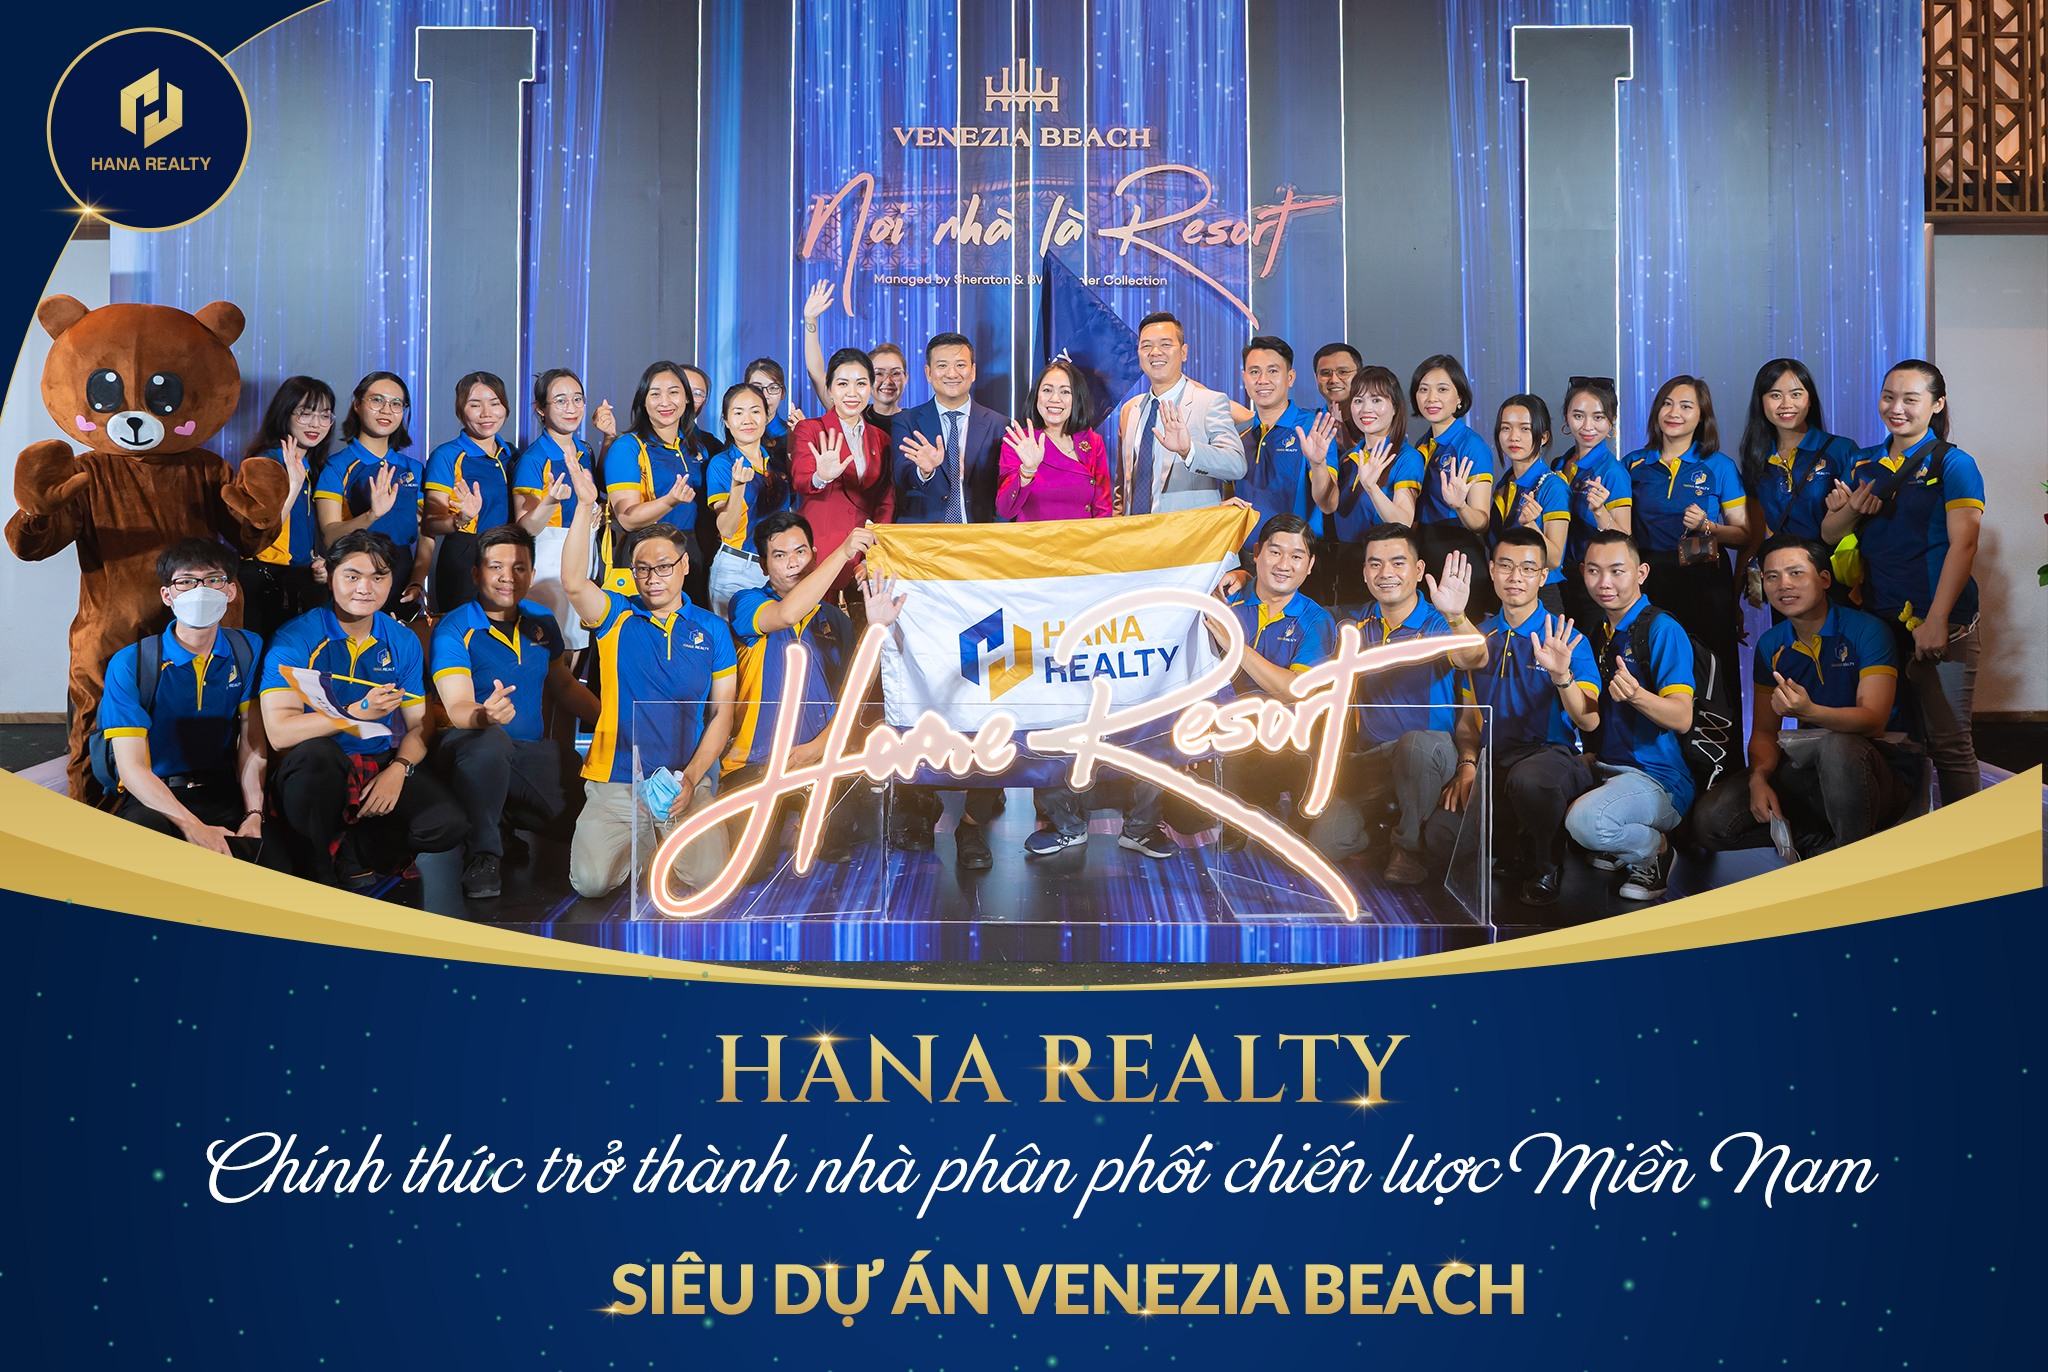 Hana Realty F1 Venezia Beach